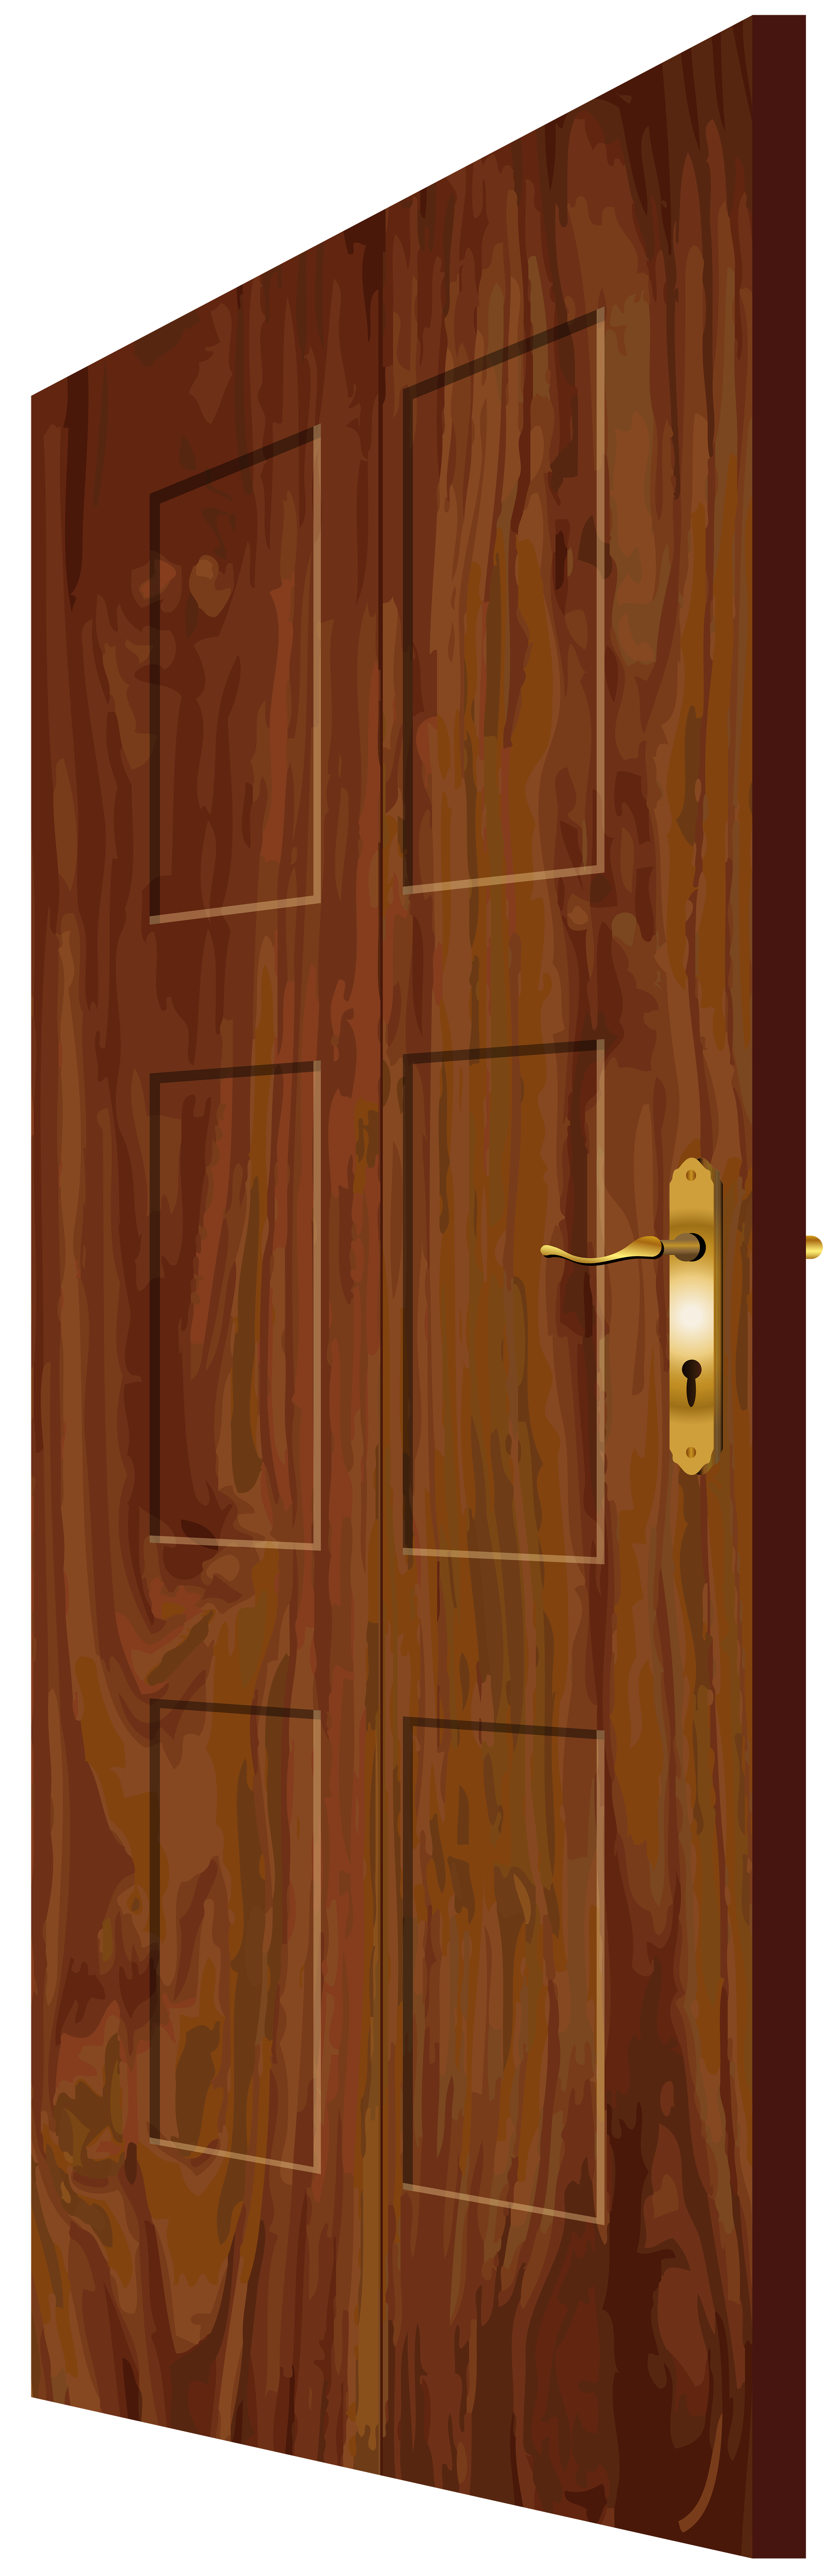 Wooden Door PNG Clip Art - Best WEB Clipart